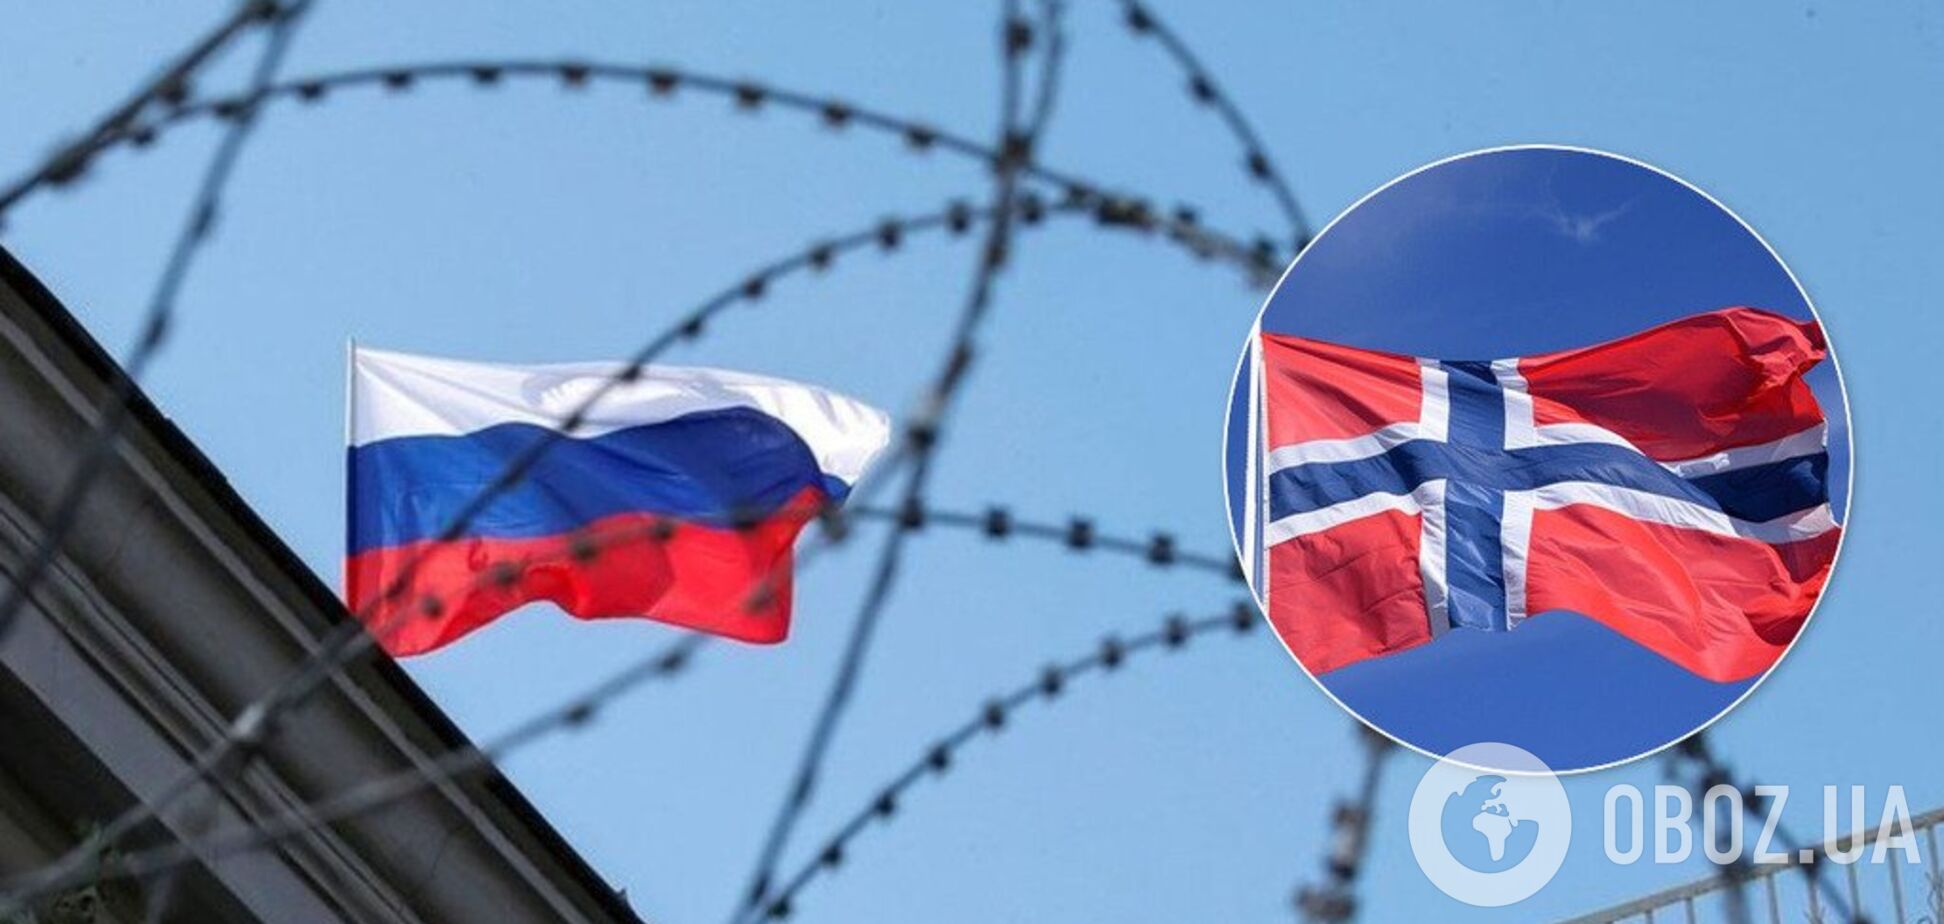 'Хорошие соседи': в ЕС приготовили очередную подлость с санкциями против России